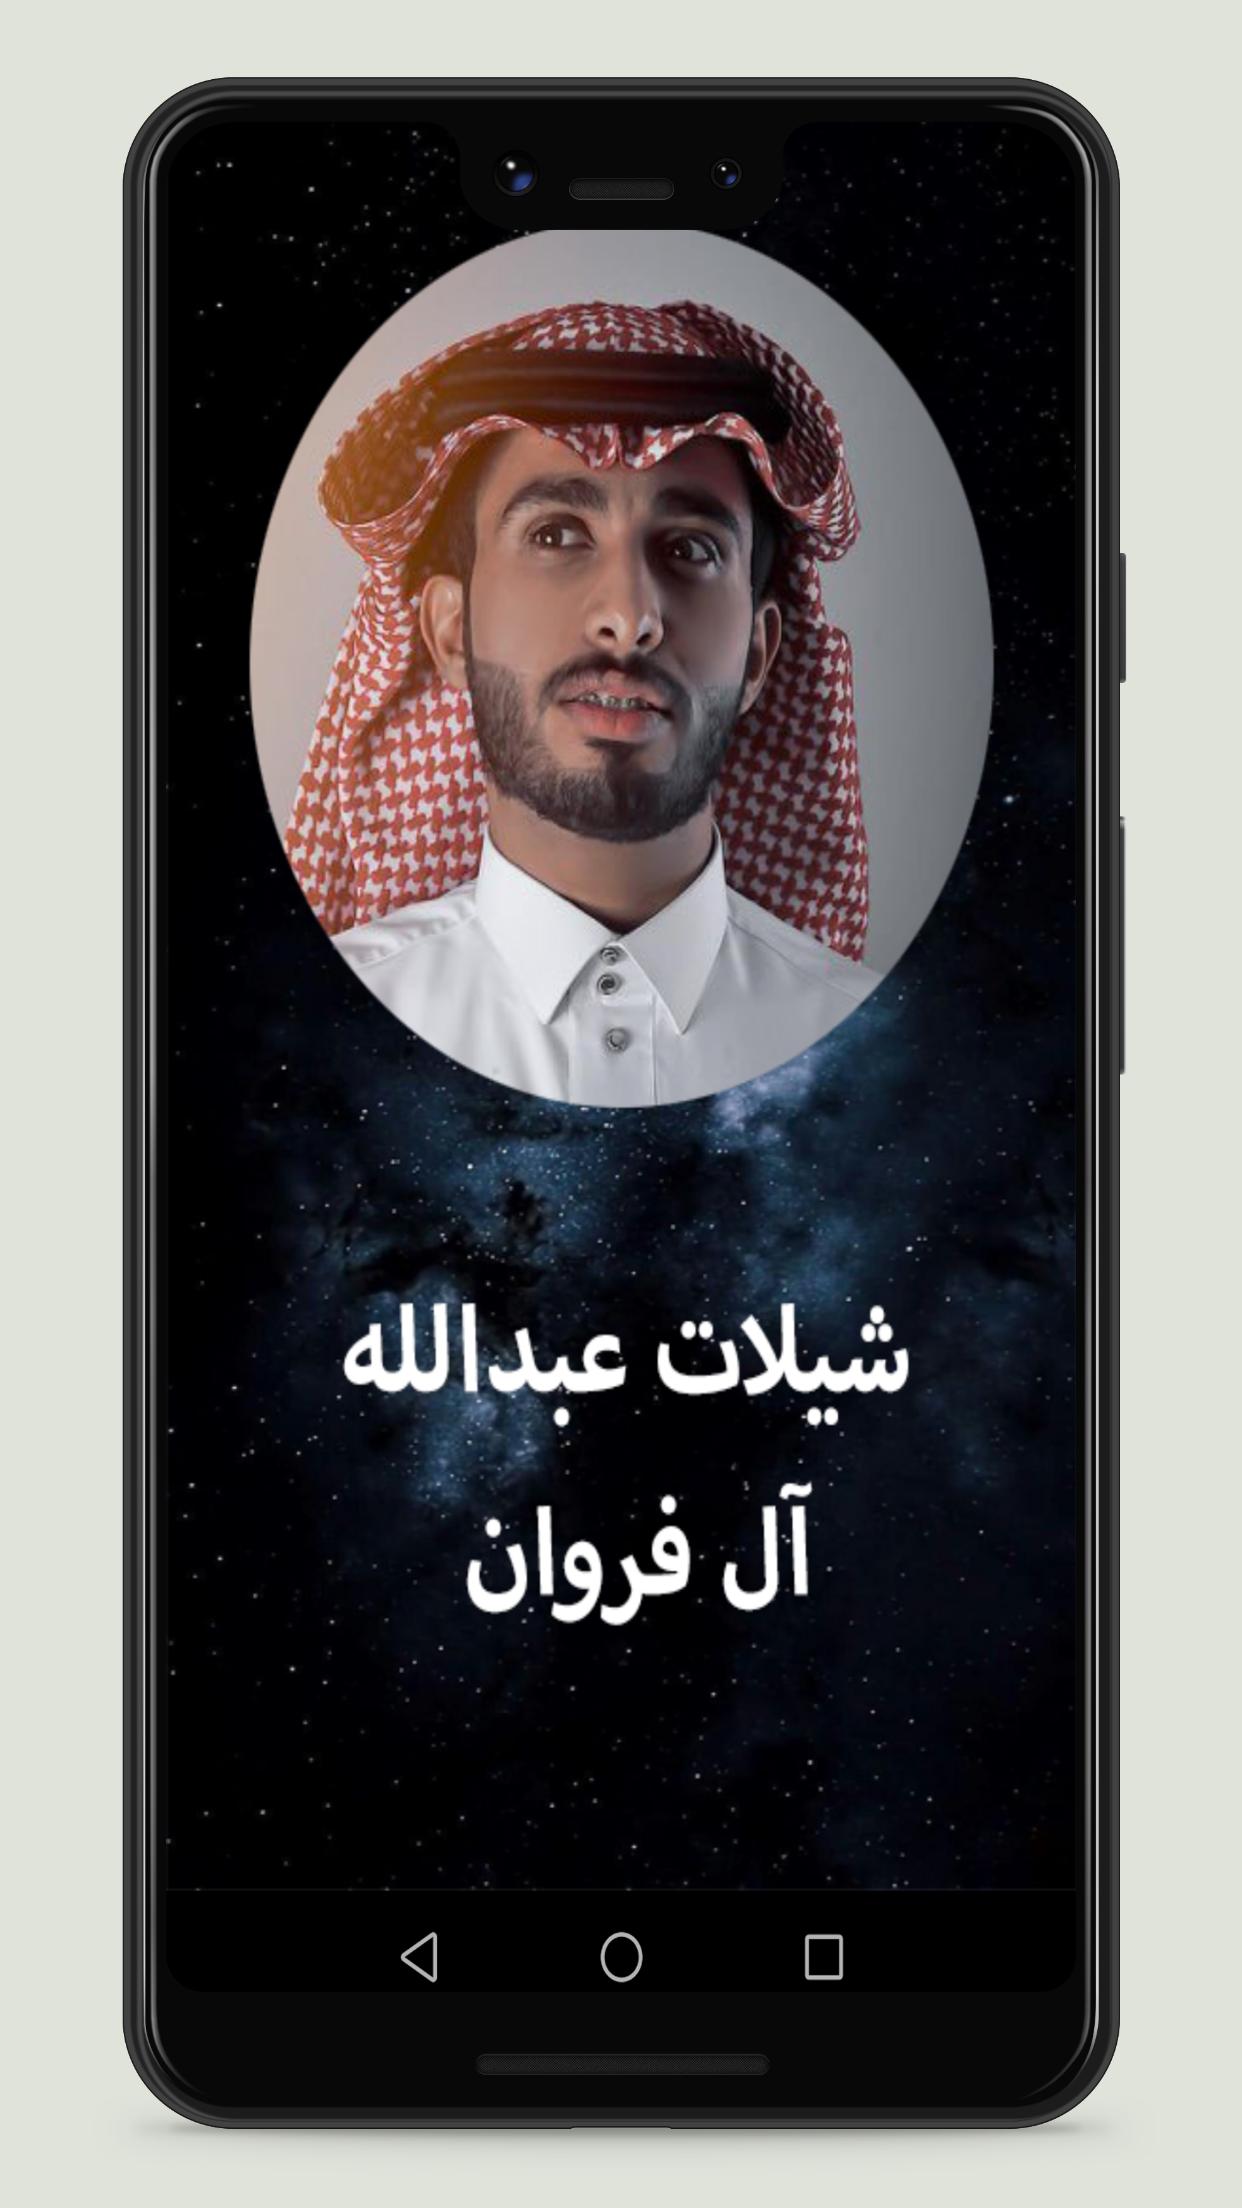 عبدالله ال فروان 2021